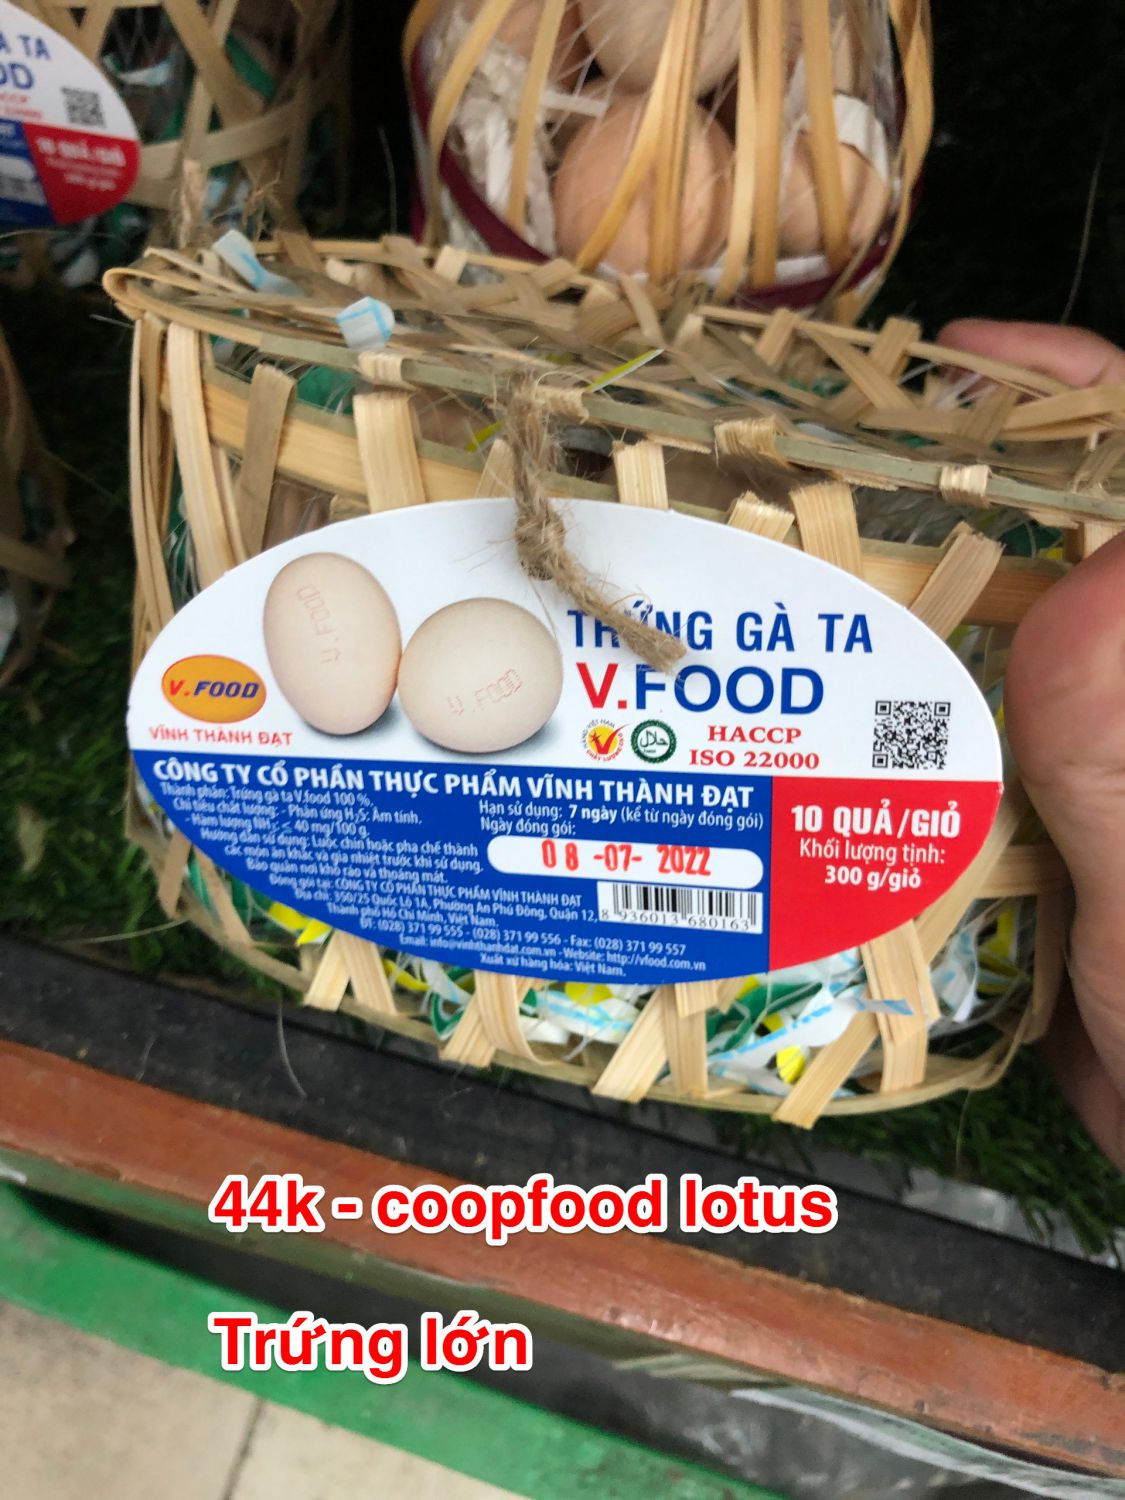 Khảo sát giá trứng gà ác (trứng gà ta) tại siêu thị vào ngày 04-07-2022 tại Thủ Đức, TP Thủ Đức, TP Hồ Chí Minh